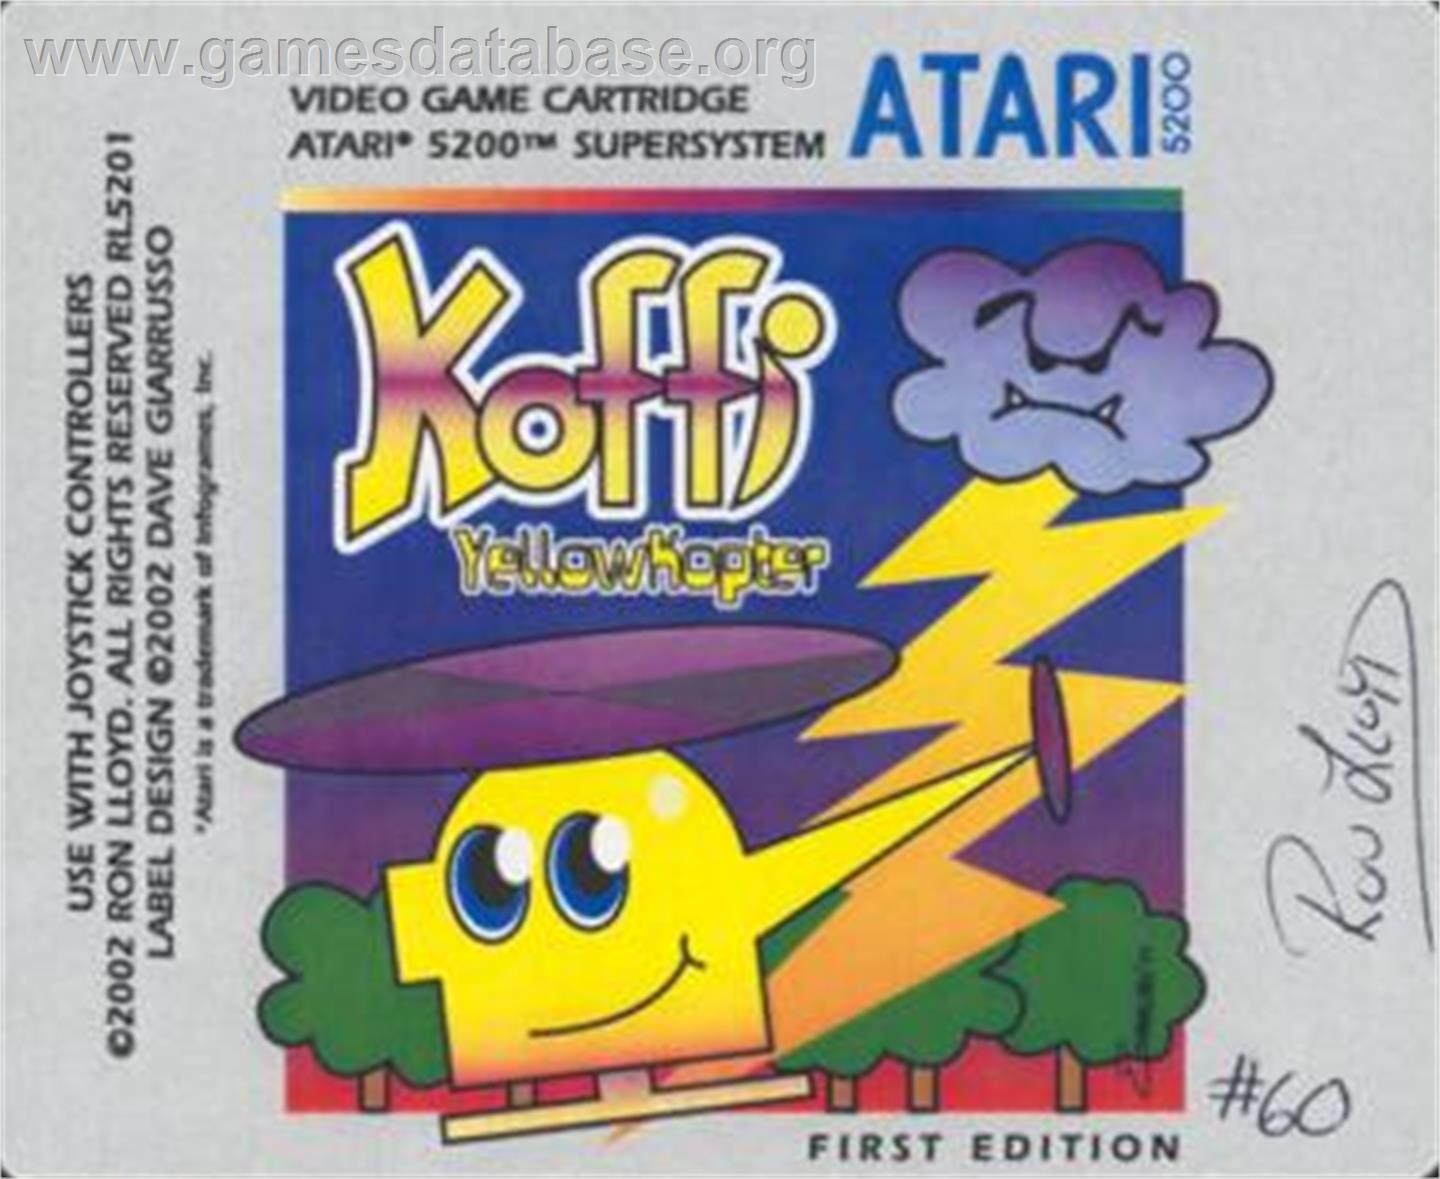 Koffi: Yellow Kopter: Demo - Atari 5200 - Artwork - Cartridge Top